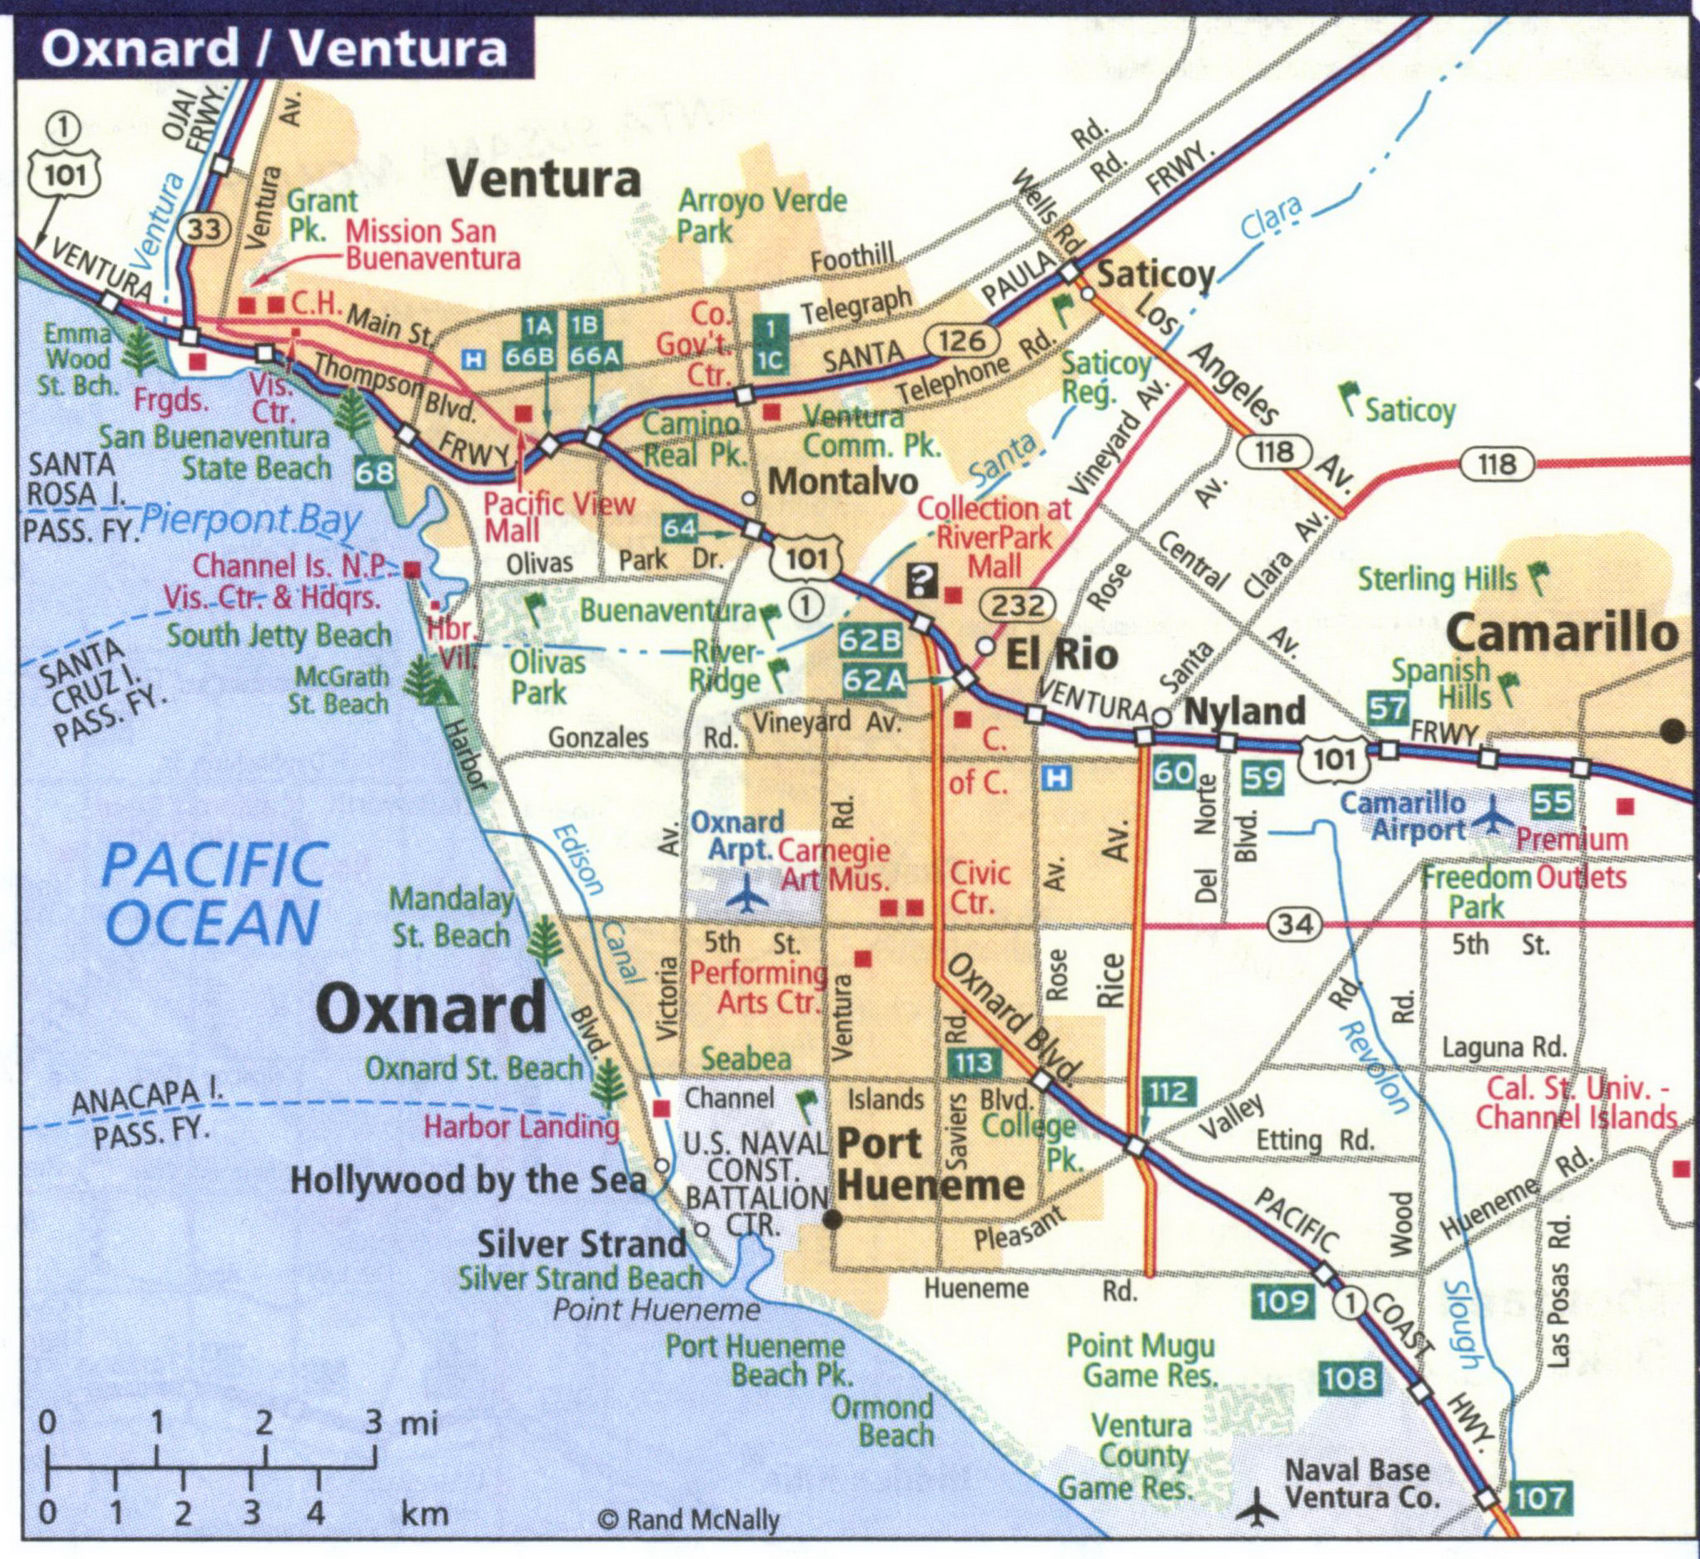 Map of Oxnard and Ventura